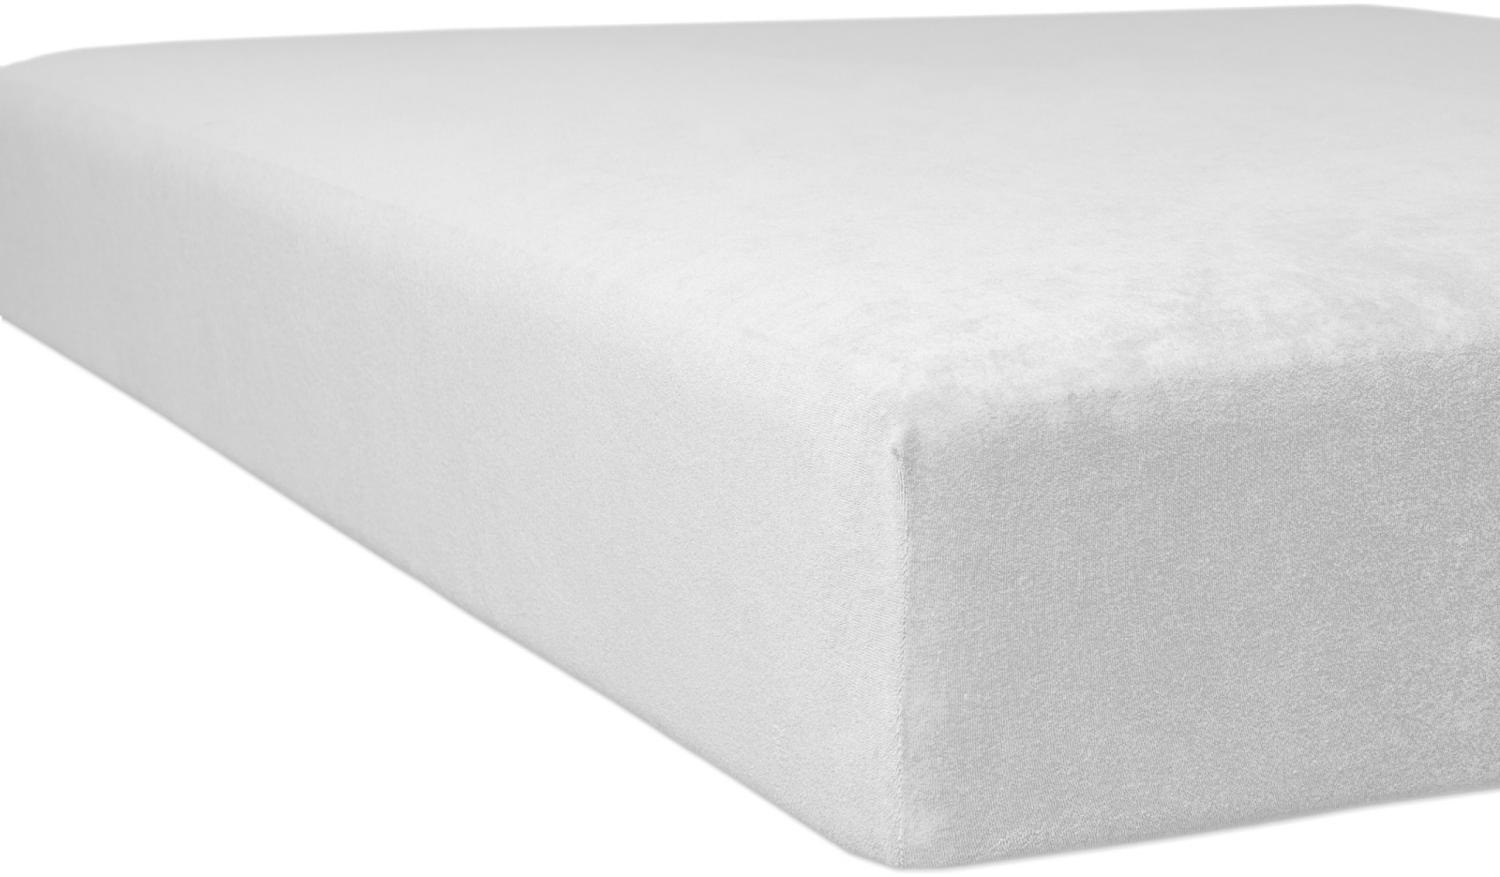 Kneer Single-Jersey Spannbetttuch für Matratzen bis 20 cm Höhe Qualität 60 Farbe weiß 120-130x200 cm Bild 1